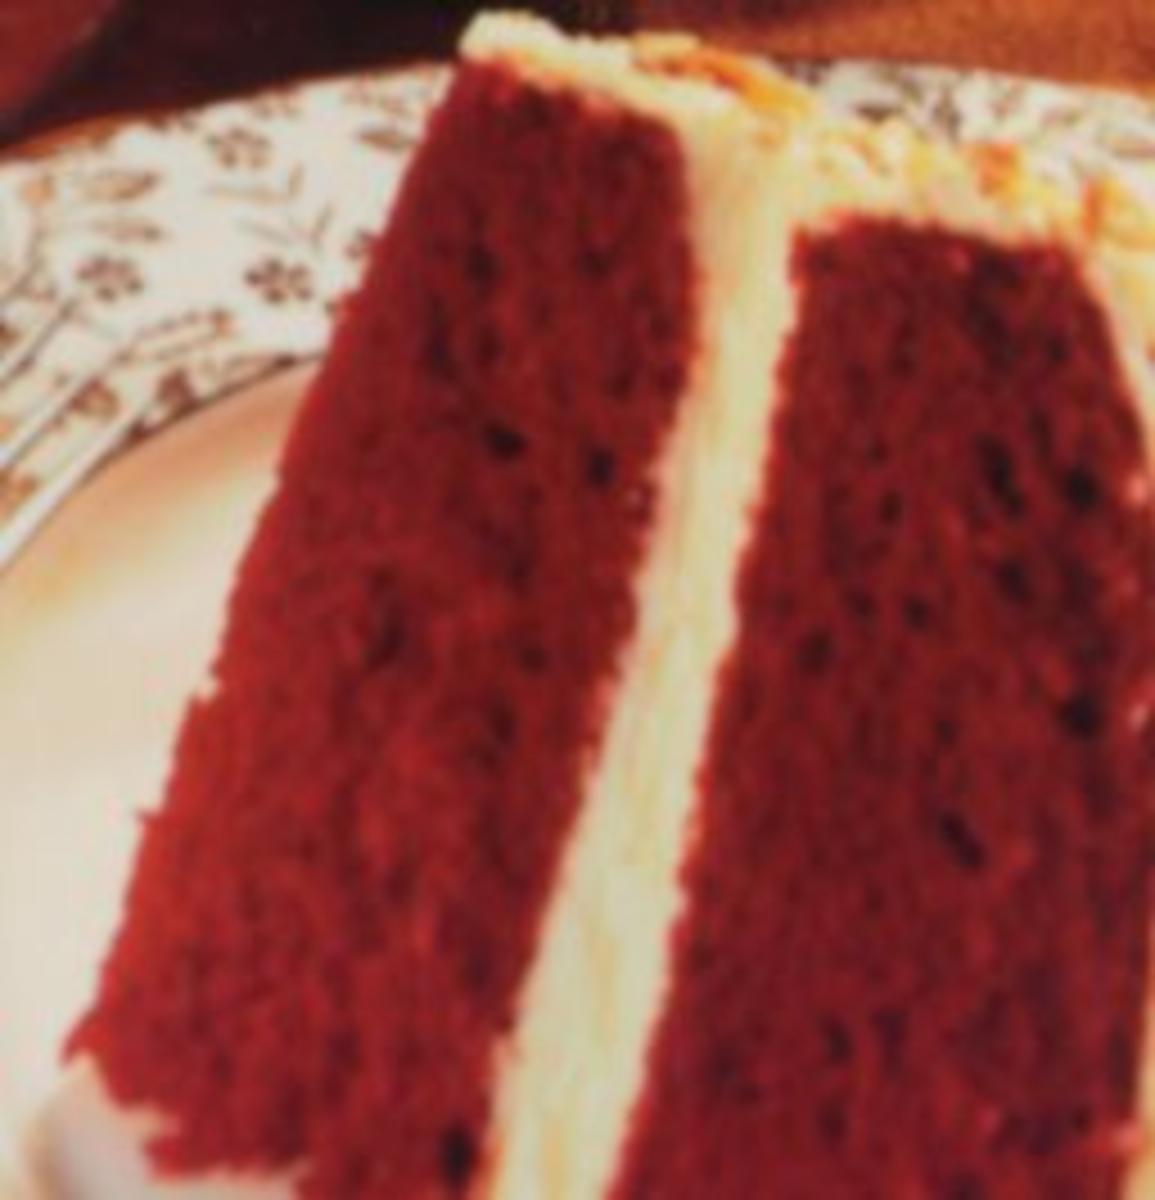 Roter Samt  Kuchen -Echt Amerikanisch schmeckt zart wie Samt - Leicht zu backen - Bild eingegeben - Rezept